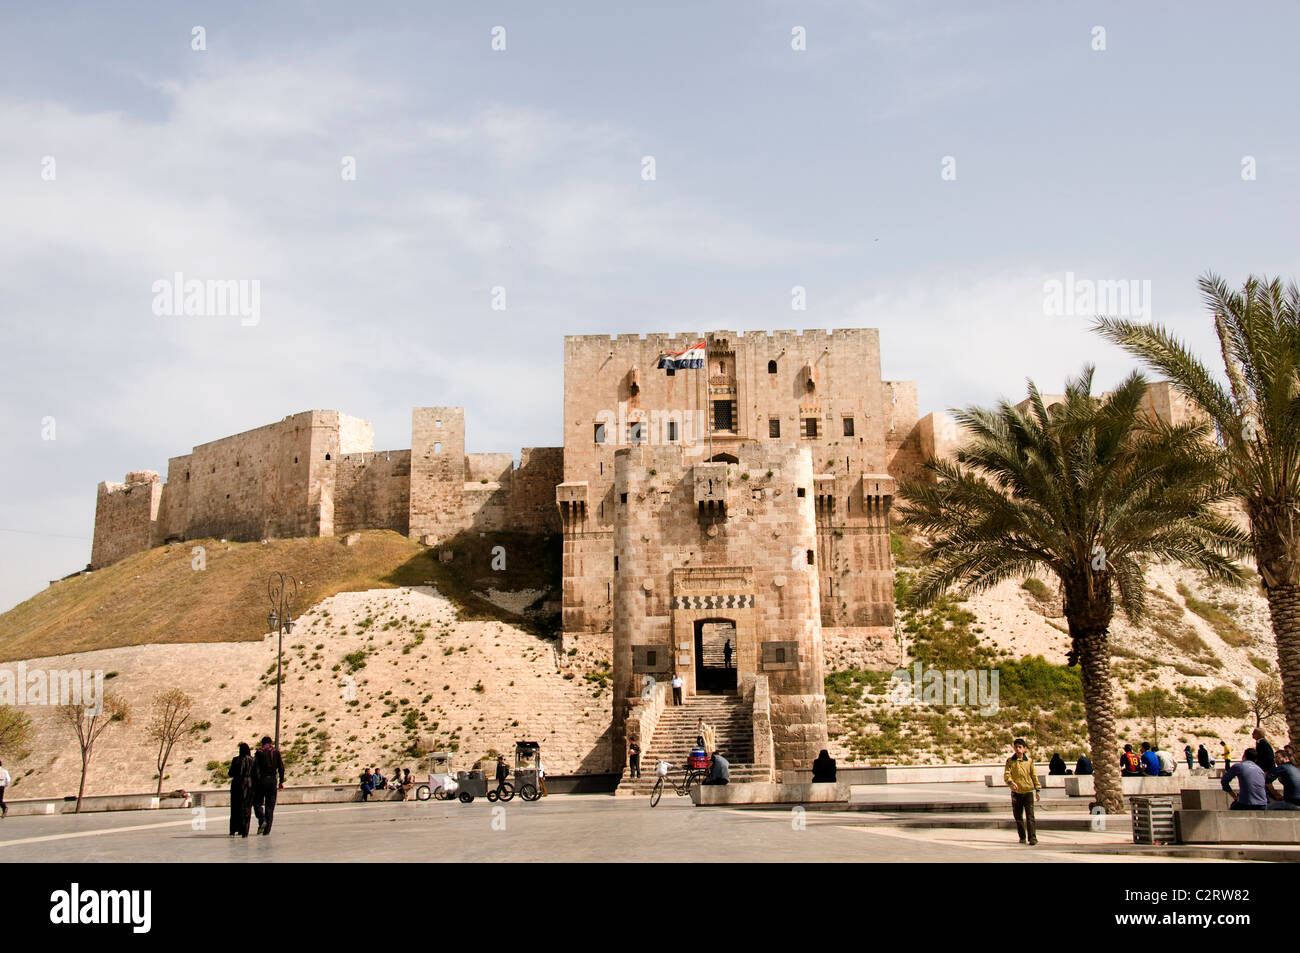 Citadel / Castle of Aleppo in Aleppo: 2 reviews and 48 photos